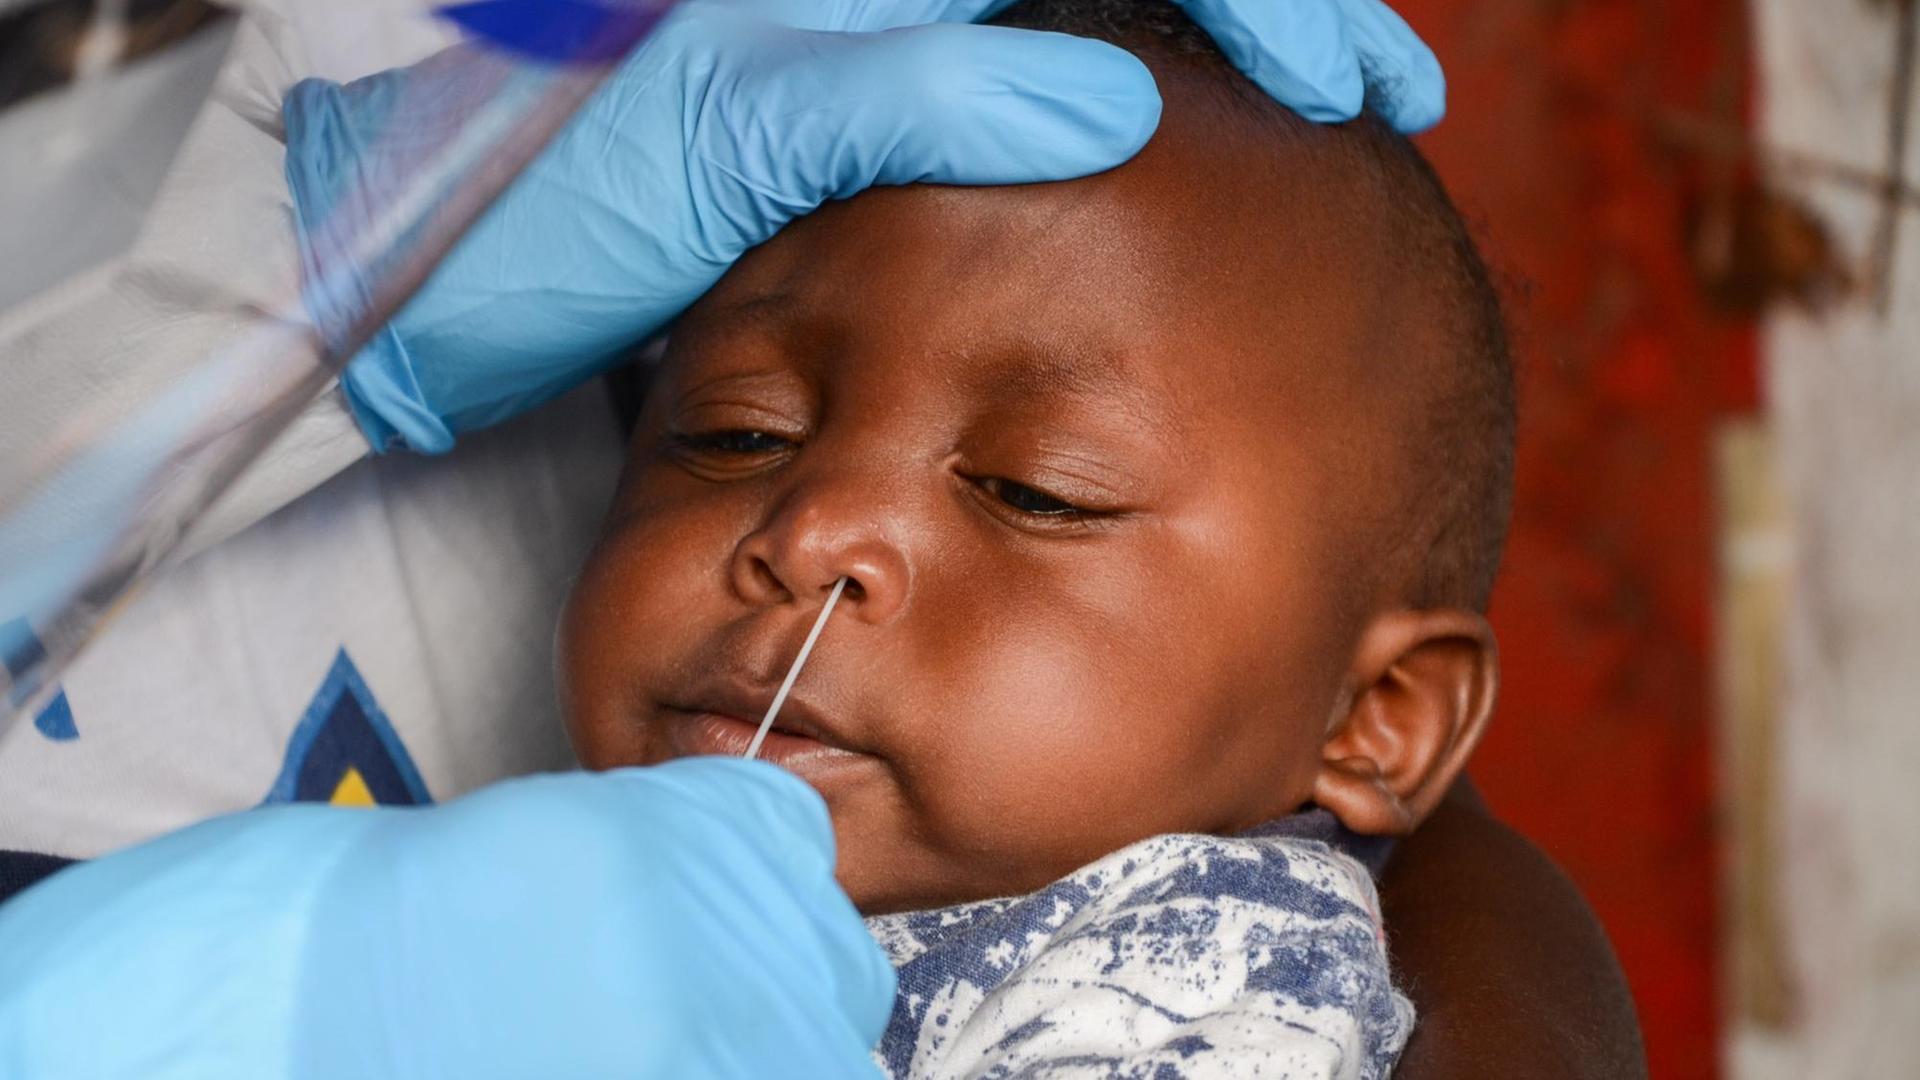 COVID-19-Test in Kenia an einem Baby im März 2020